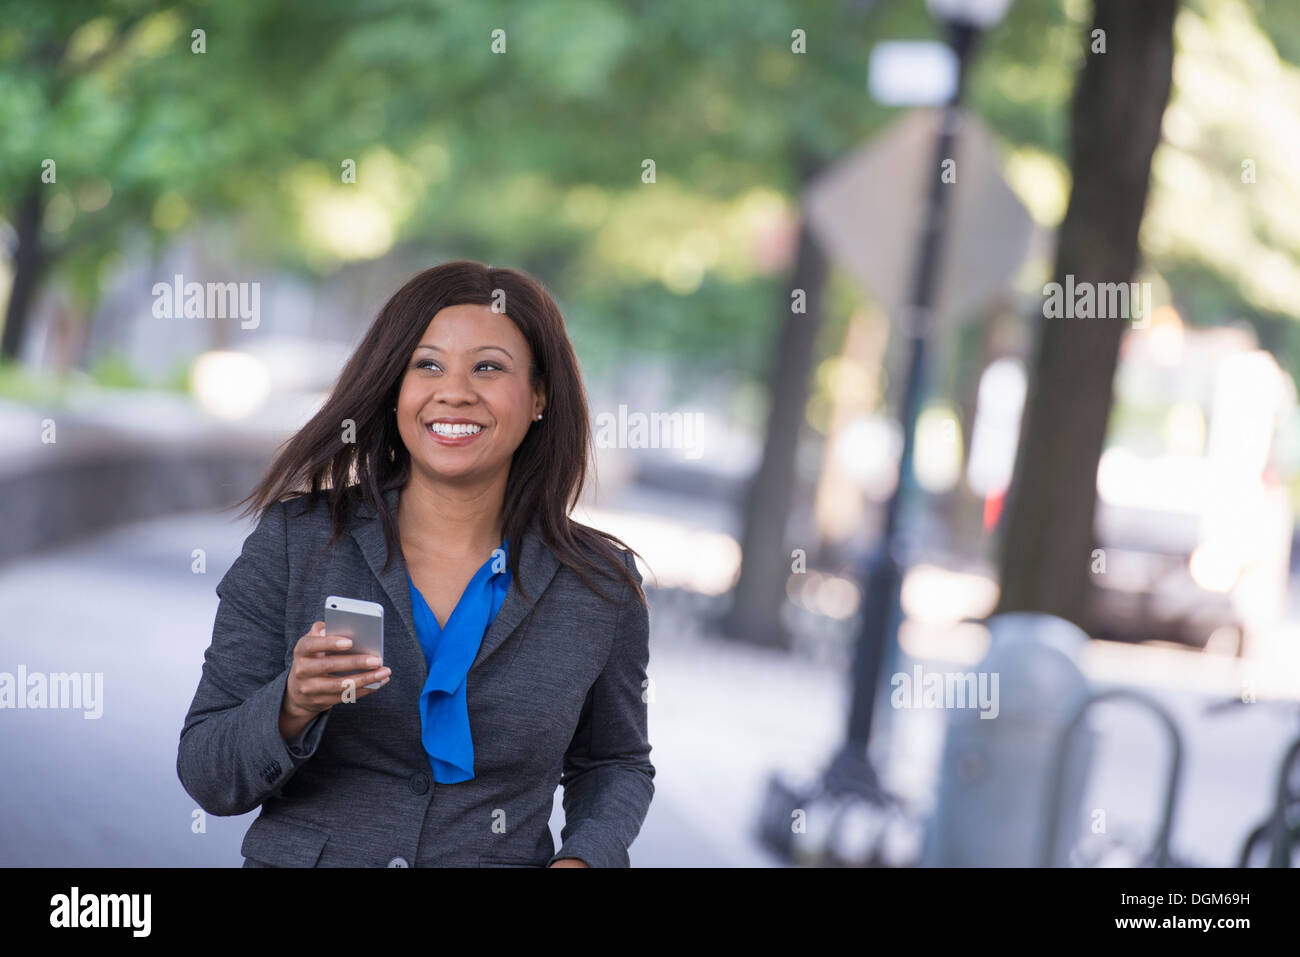 Sommer. Eine Frau in einem grauen Anzug mit einem leuchtend blauen Shirt. Halten ein smart Phone. Stockfoto